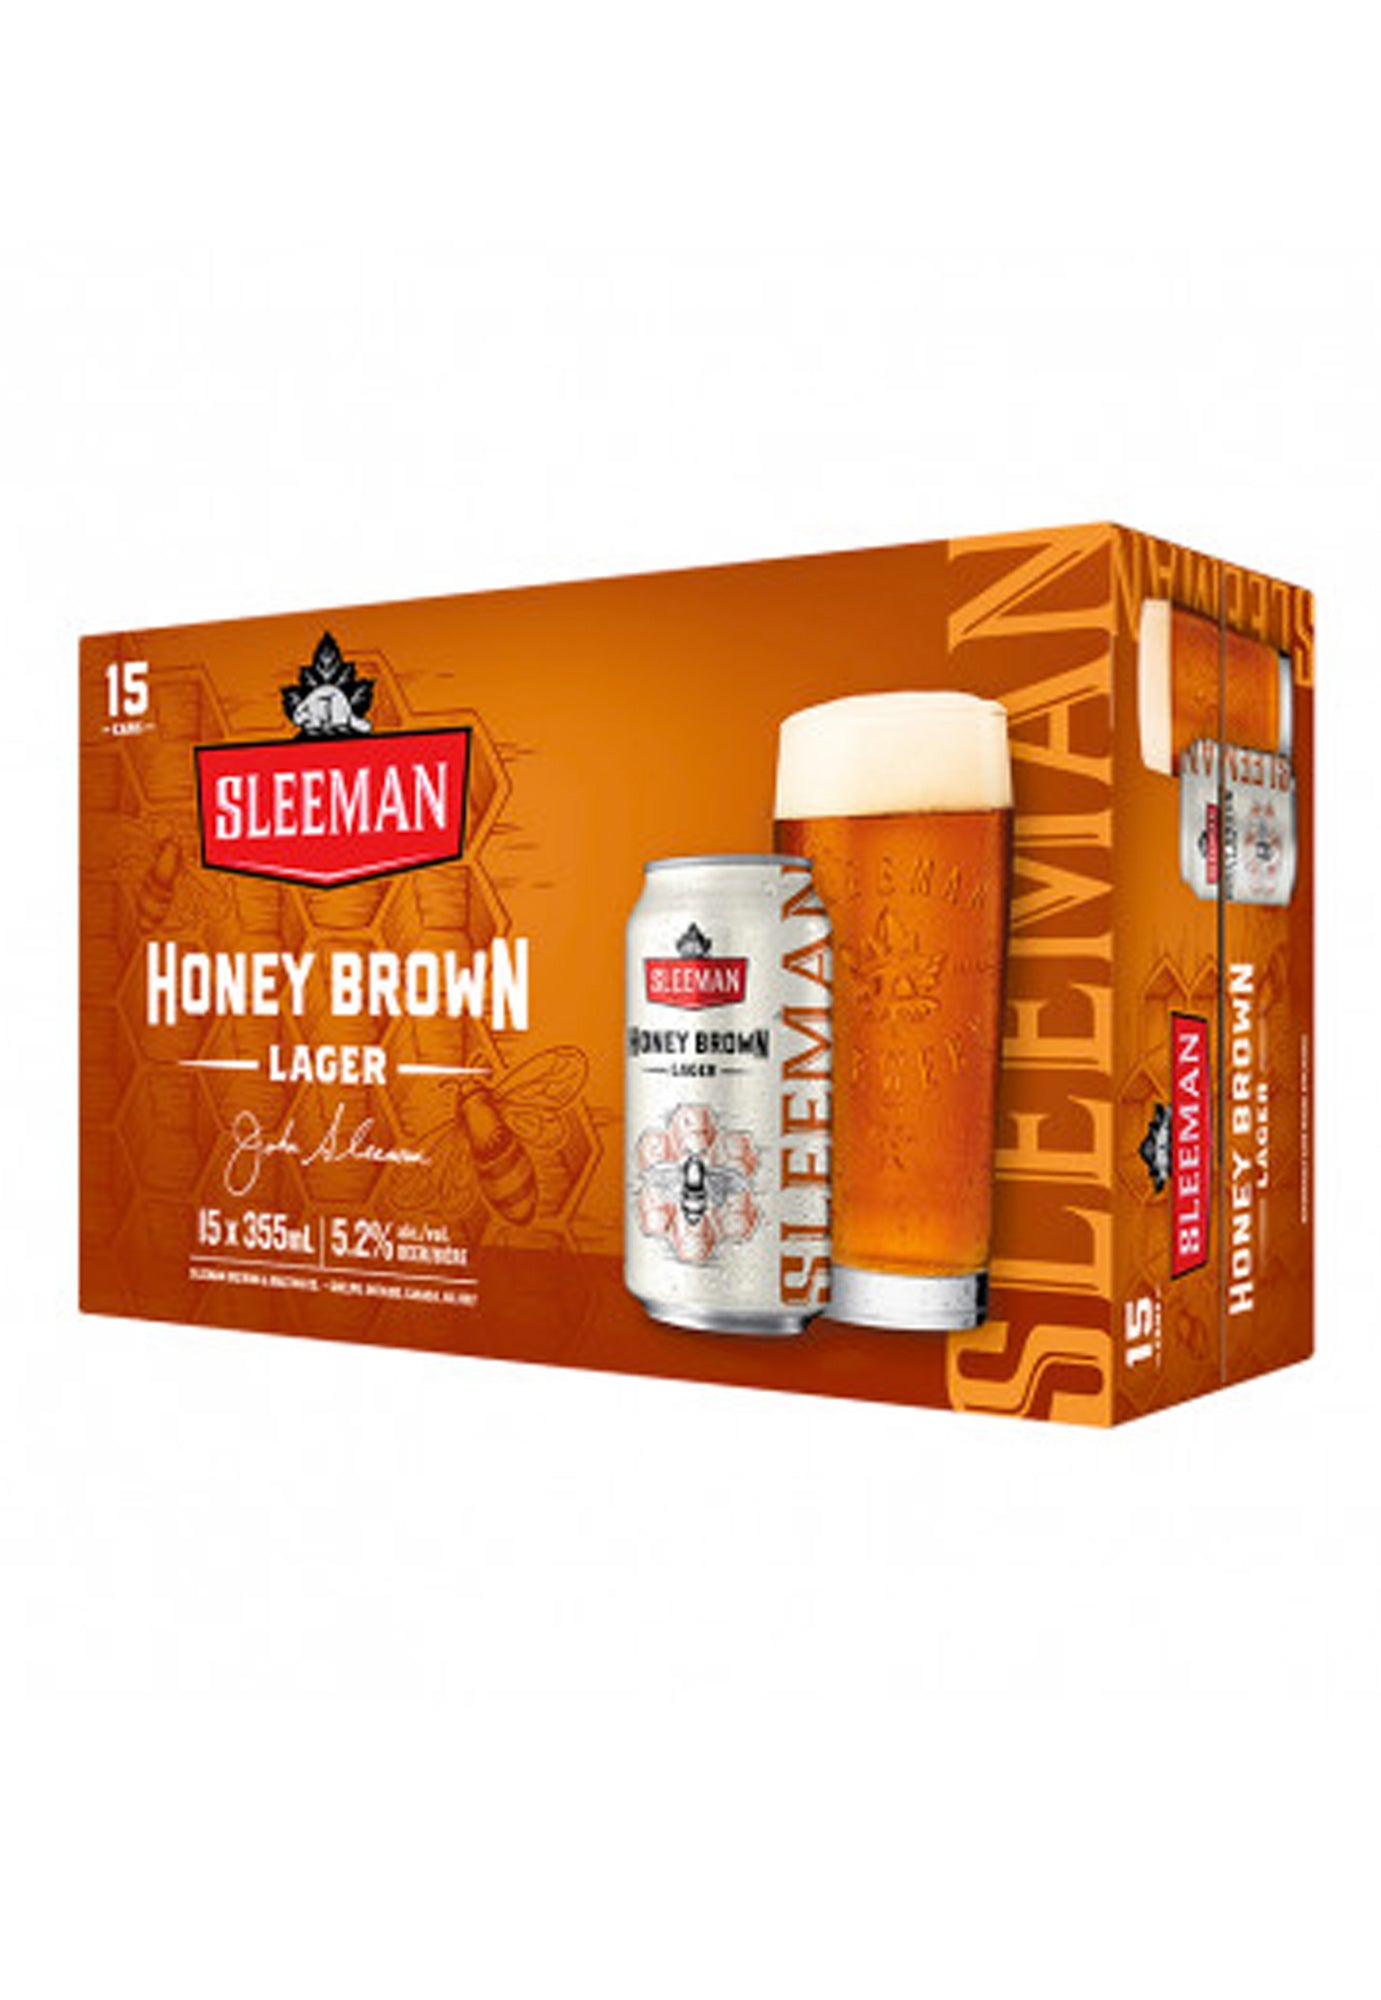 Sleeman Honey Brown 355 ml  - 15 Cans